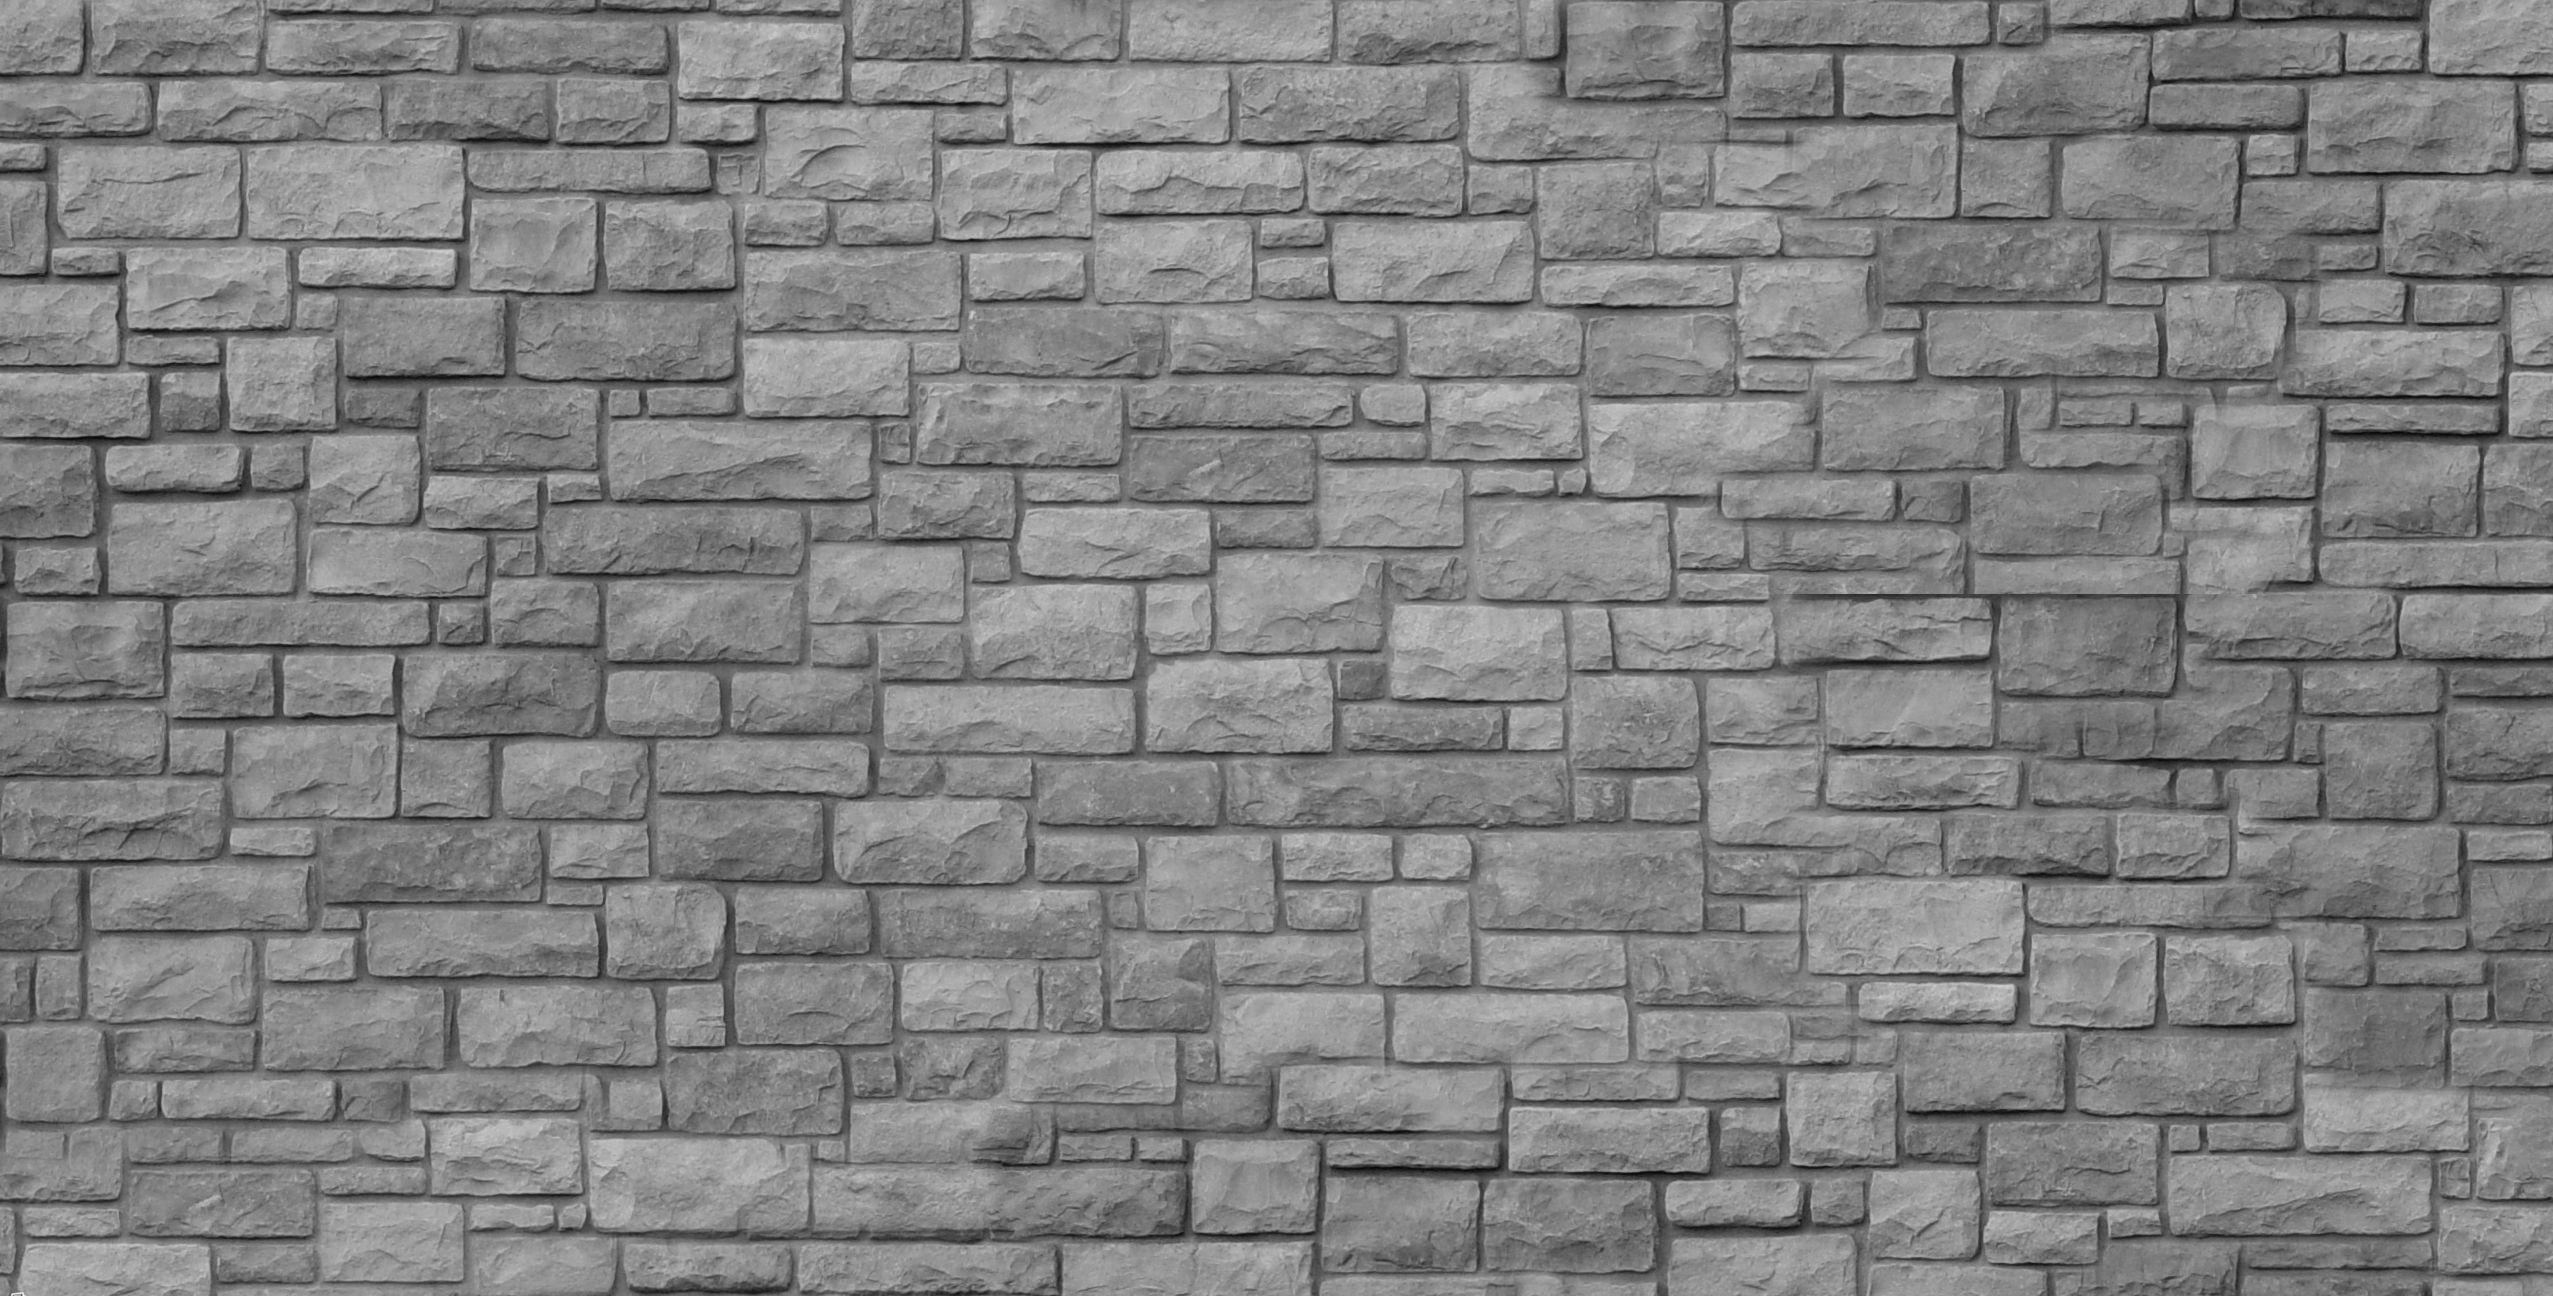 Kết quả hình ảnh cho pebble wall texture seamless | Texture ...